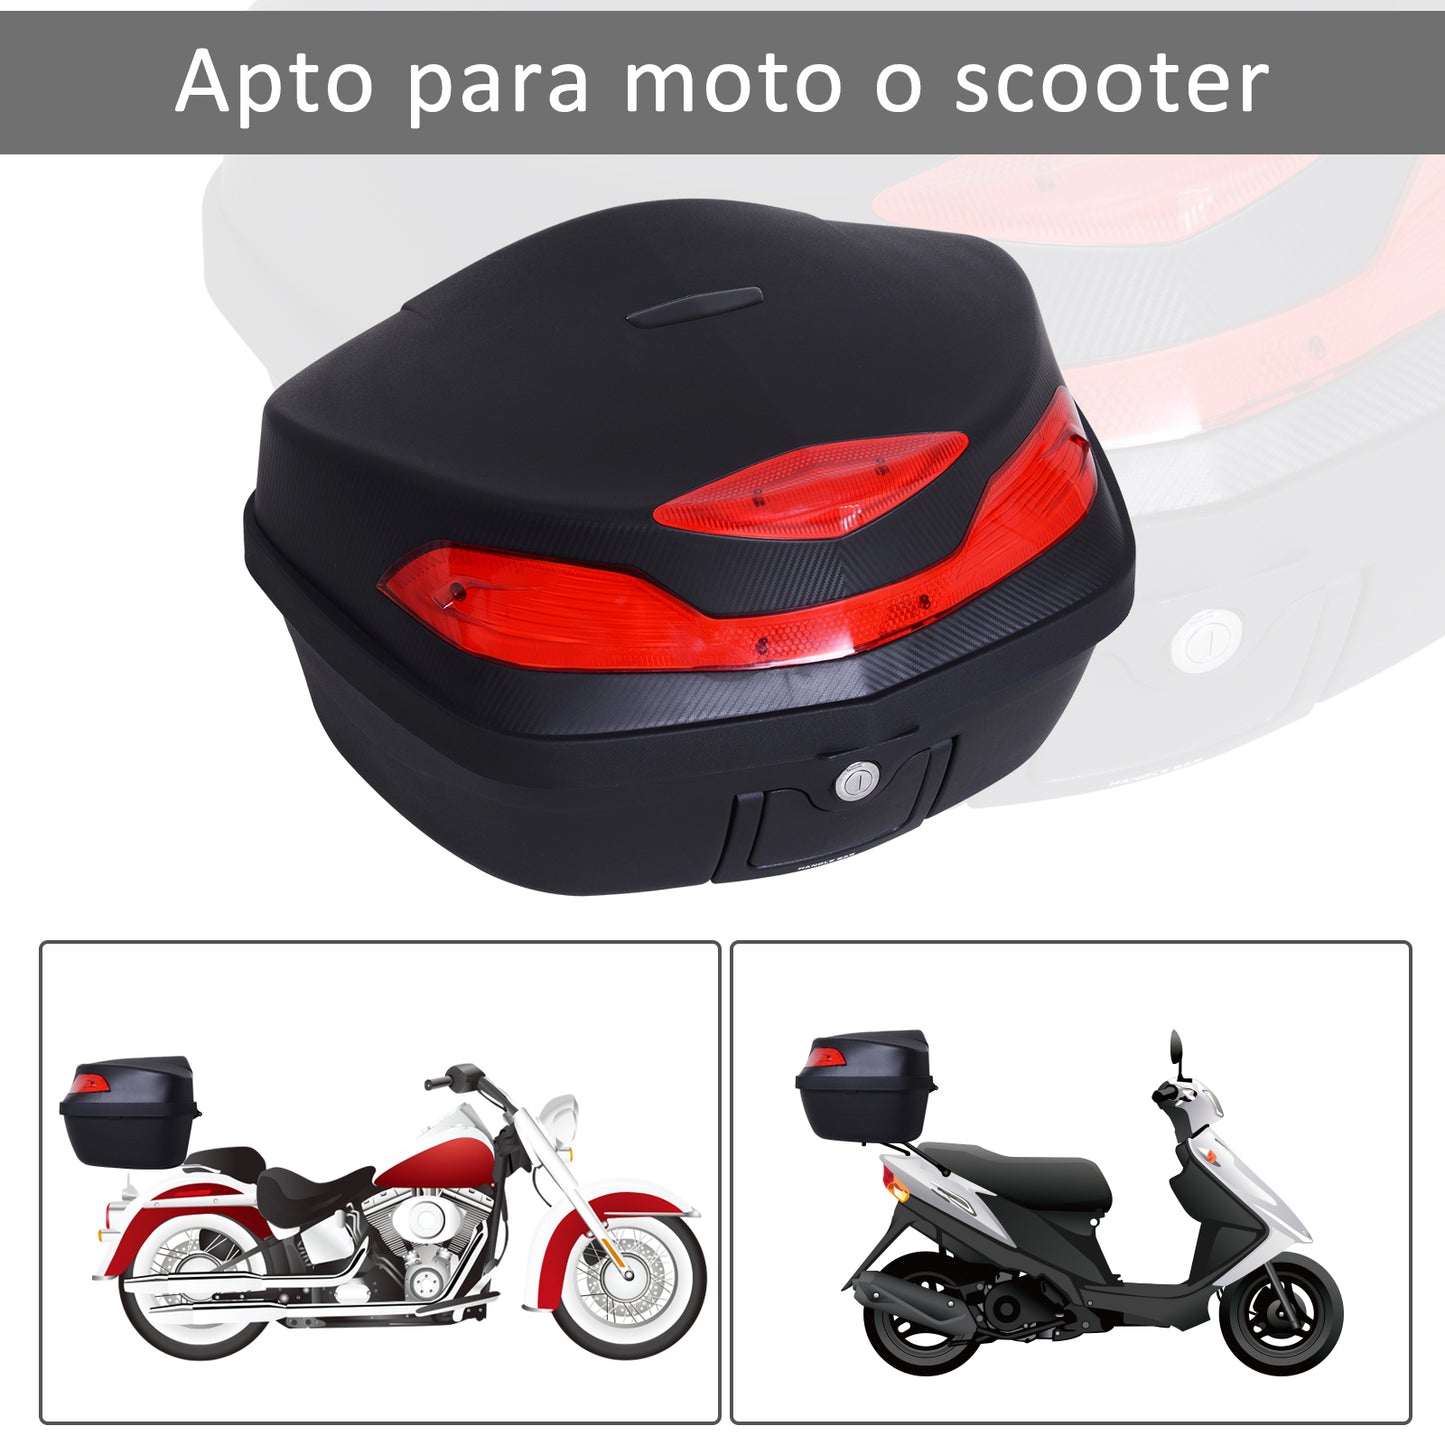 HOMCOM Baúl Moto Universal 48L + Llaves y Accesorios Equipaje Caja de Moto Topcase Casco para Motocicleta Ciclomotores Scooter